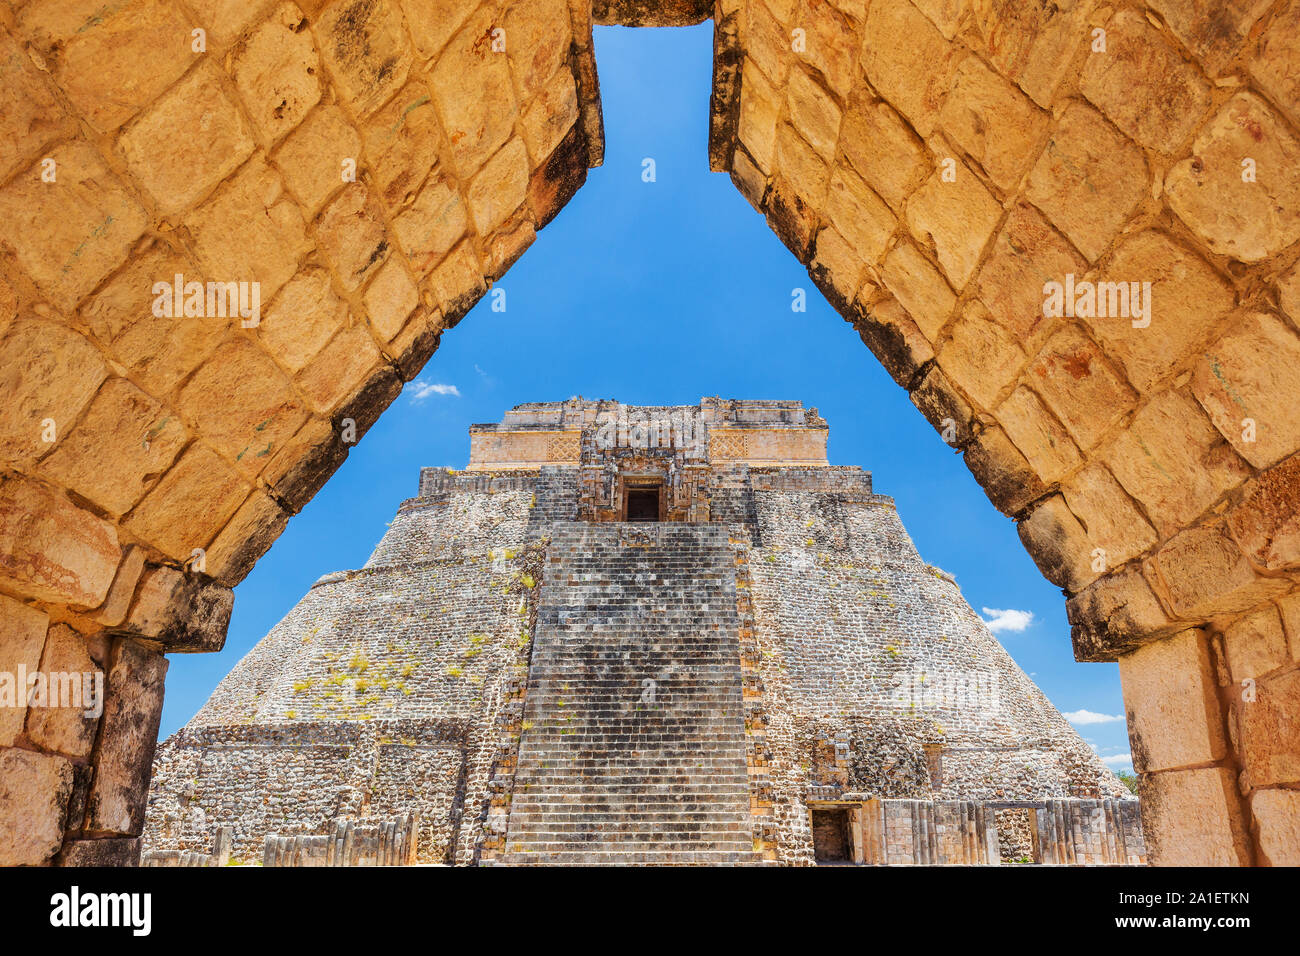 Uxmal, Messico. Piramide del mago in antiche città maya. Foto Stock